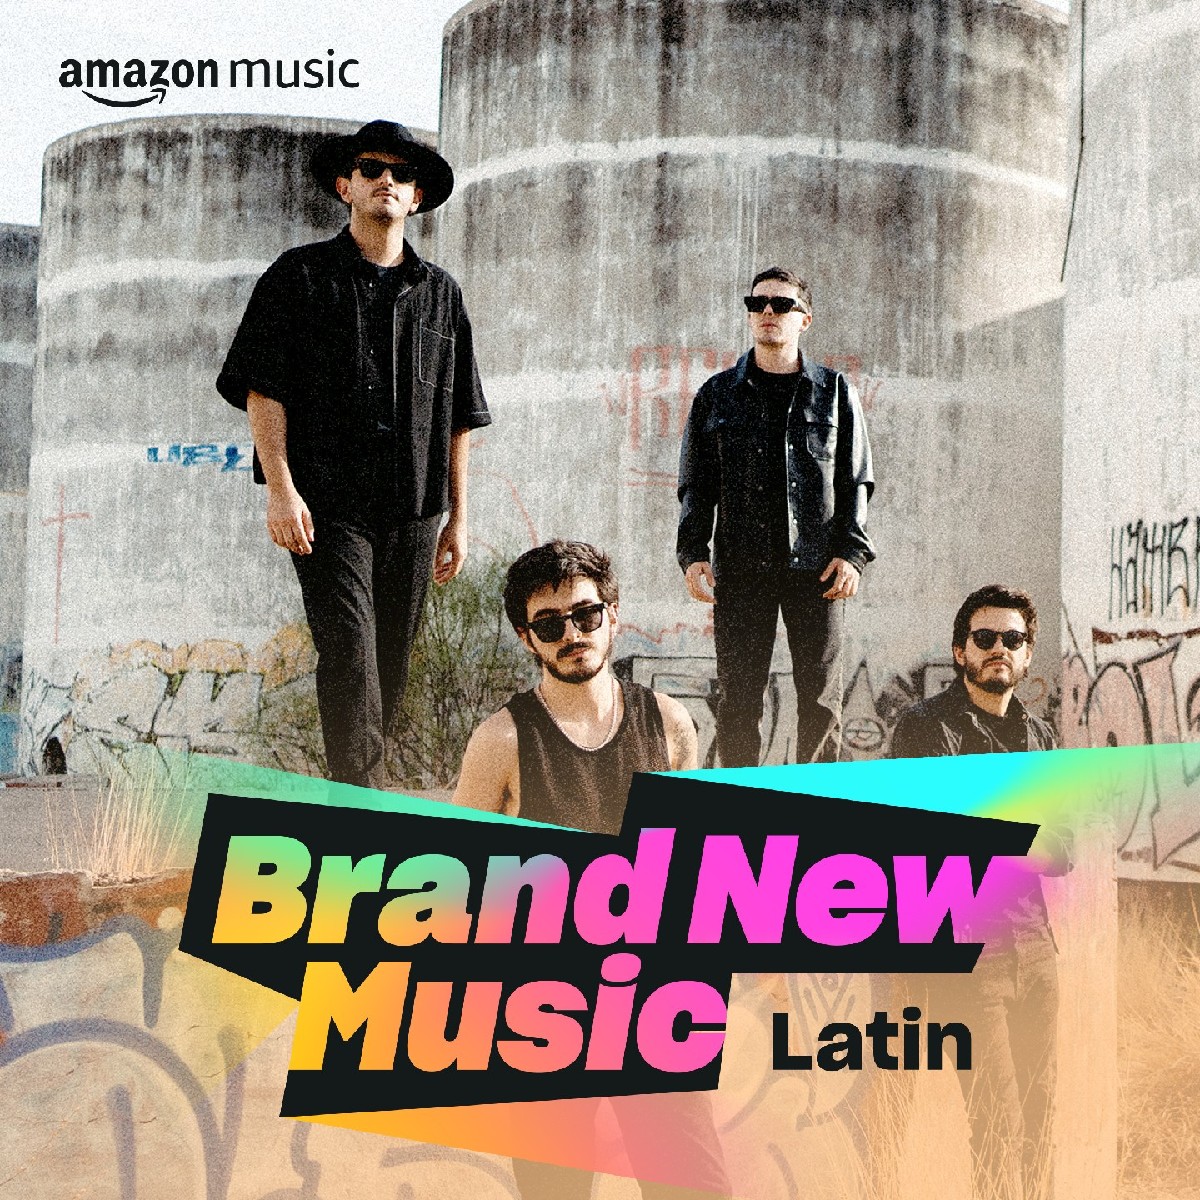 @MoratBanda 🤘 y su canción FEO están en el puesto #1 de la playlist #BrandNewMusicLatin de @amazonmusic  

No esperen más y entren a este link: brnw.ch/21wCpUW